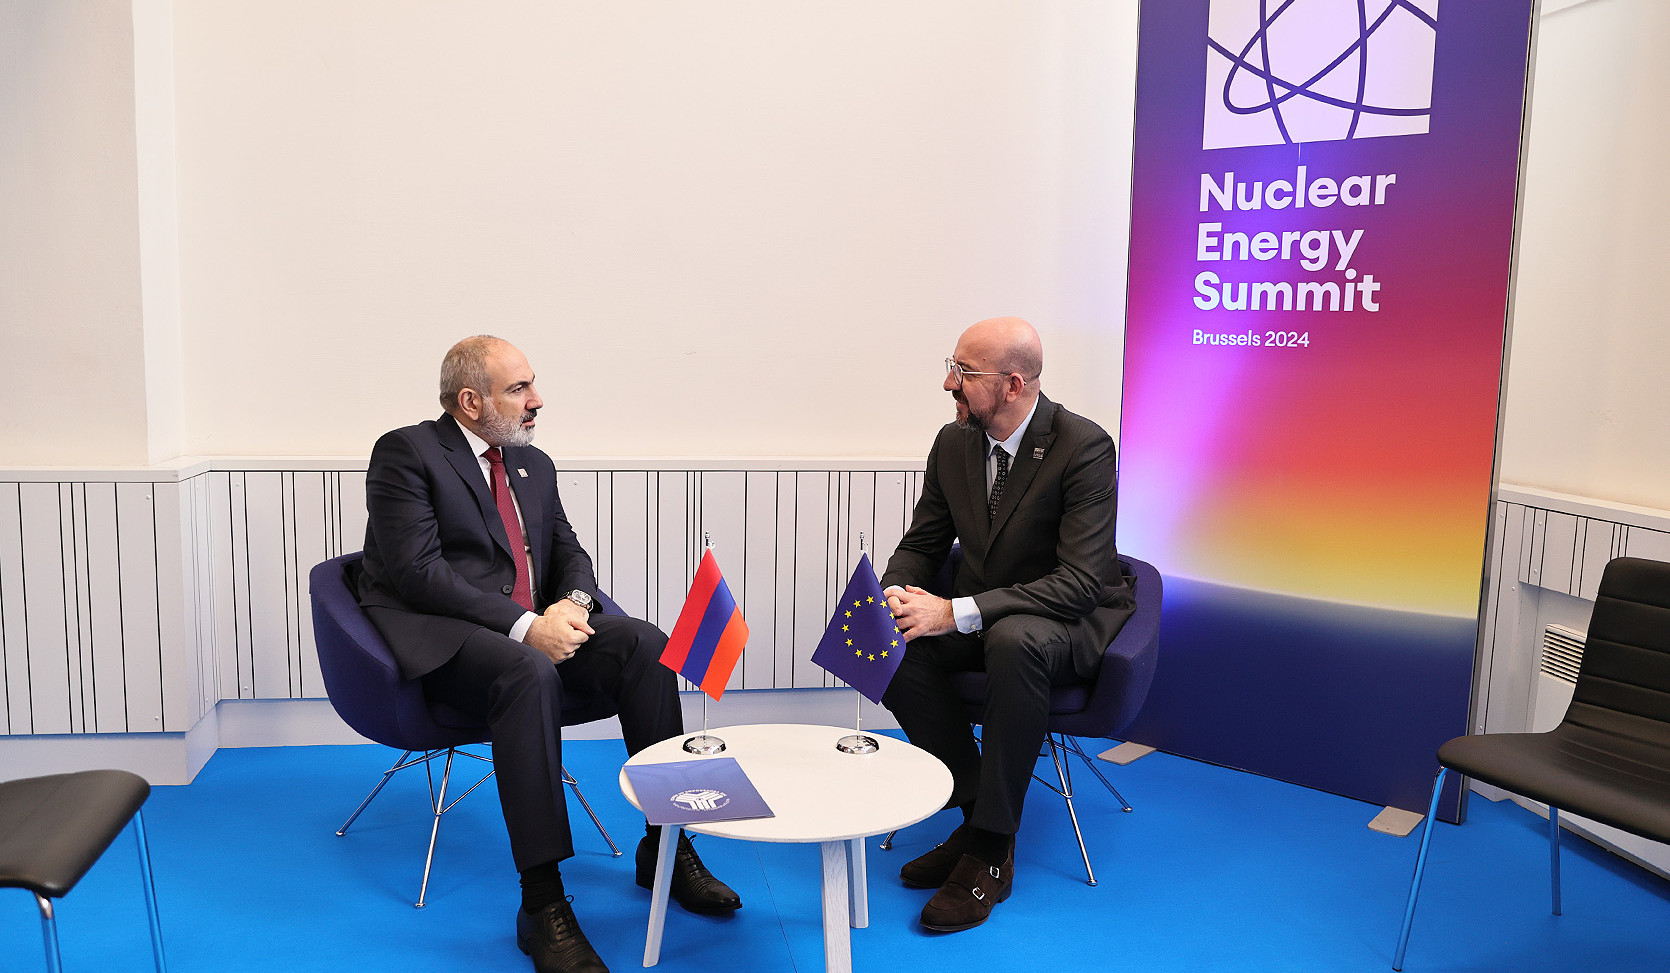 Միջուկային էներգիայի անդրանիկ գագաթնաժողովի շրջանակում տեղի է ունեցել վարչապետ Նիկոլ Փաշինյանի հանդիպումը Եվրոպական խորհրդի նախագահ Շառլ Միշելի հետ